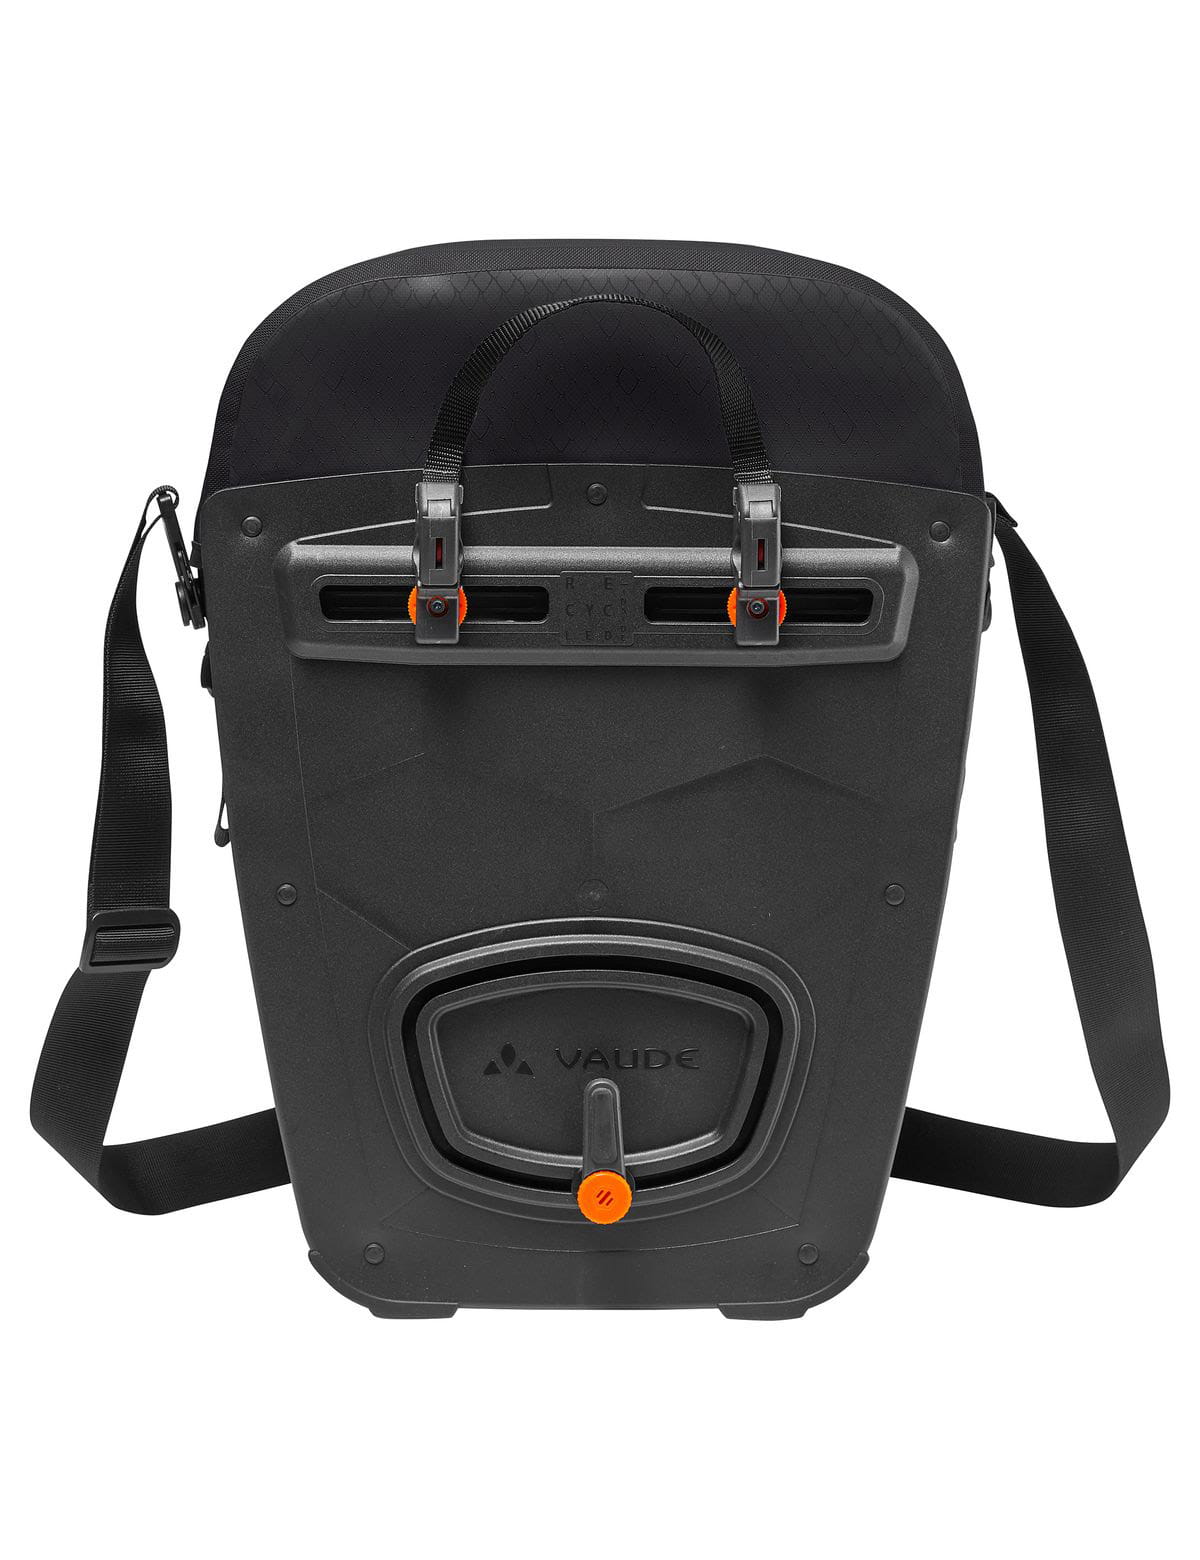 VAUDE Aqua Back Pro Rear Pannier Bag Pair 48L